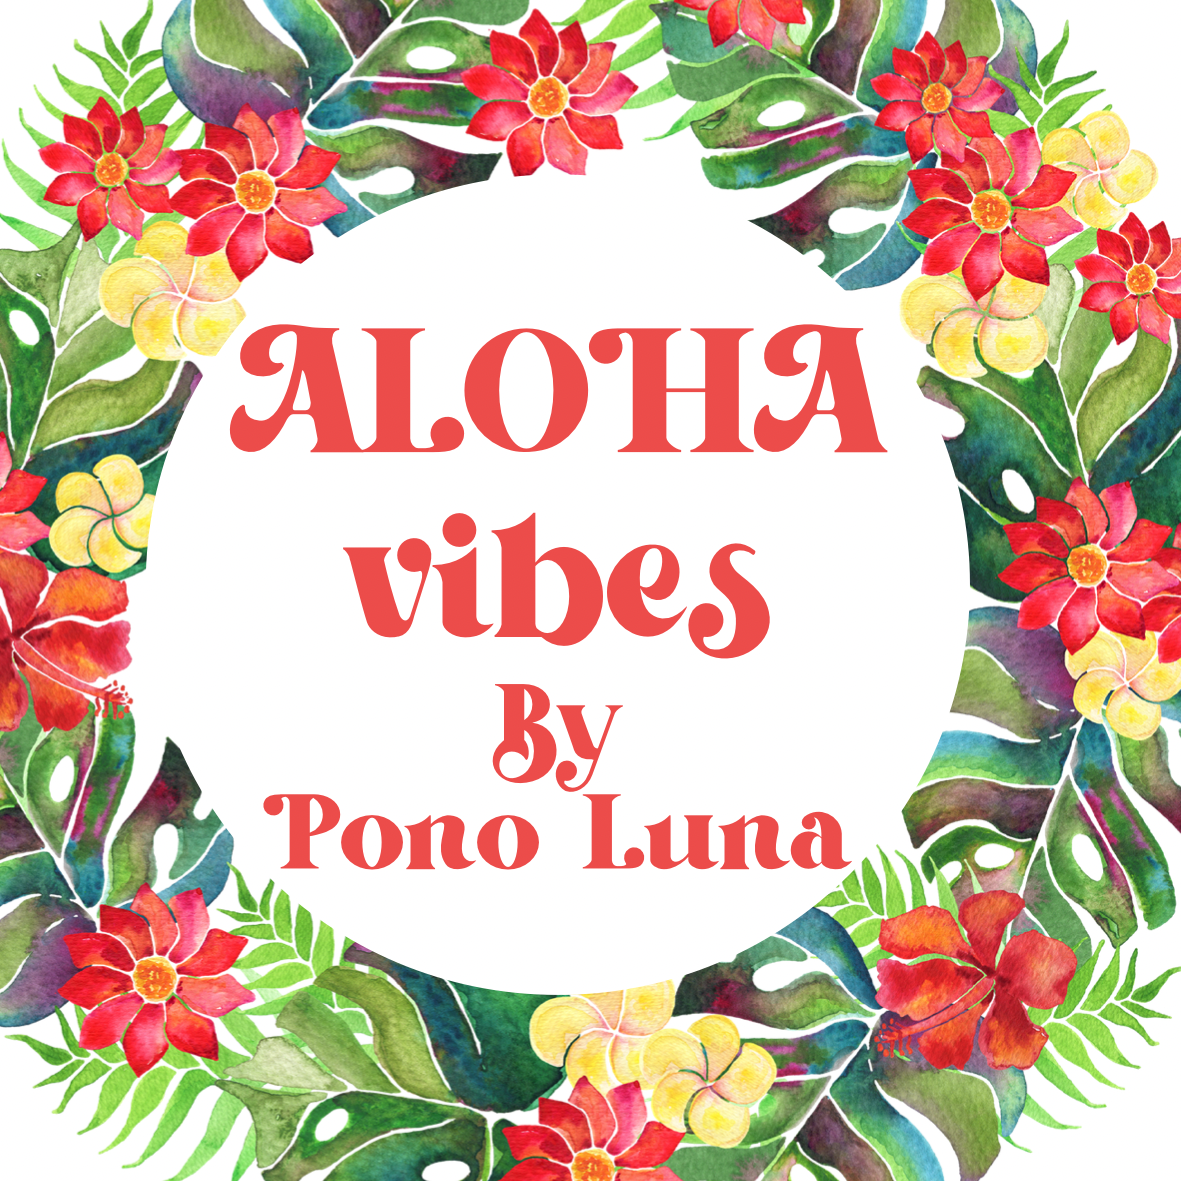 Aloha Vibes Box